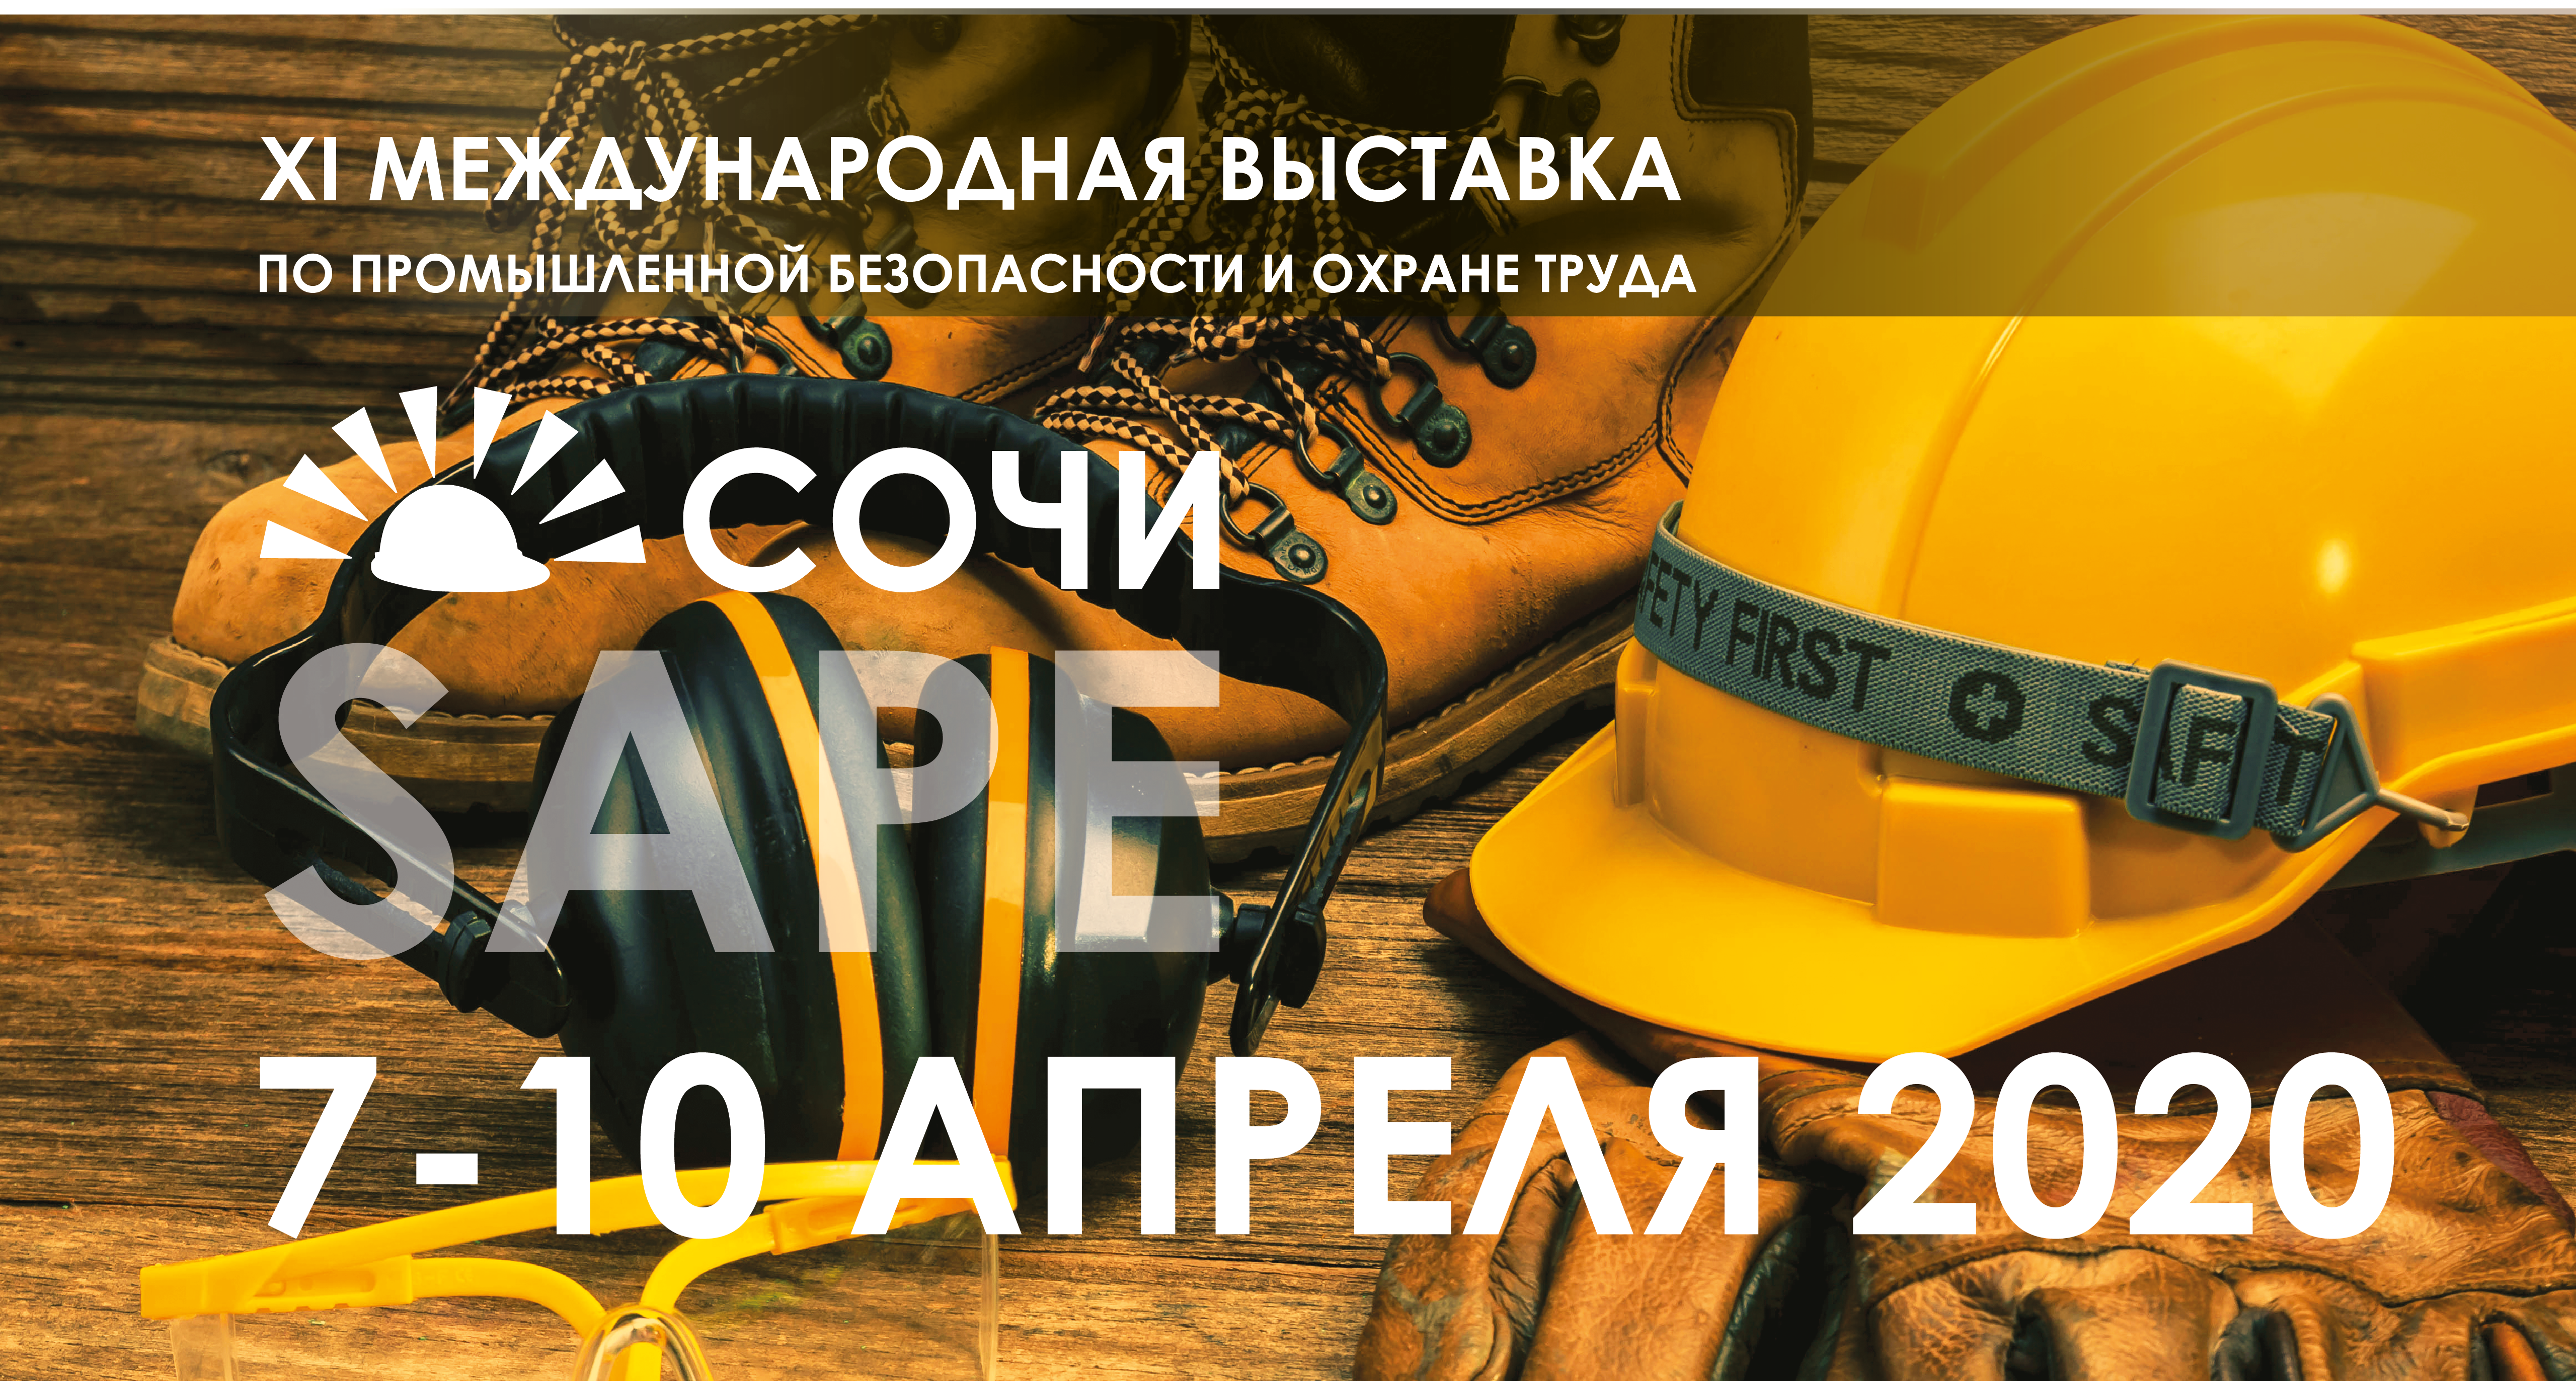 Работодателей приглашают принять участие  в XI Международной выставке по промышленной безопасности и охране труда «SAPE 2020»